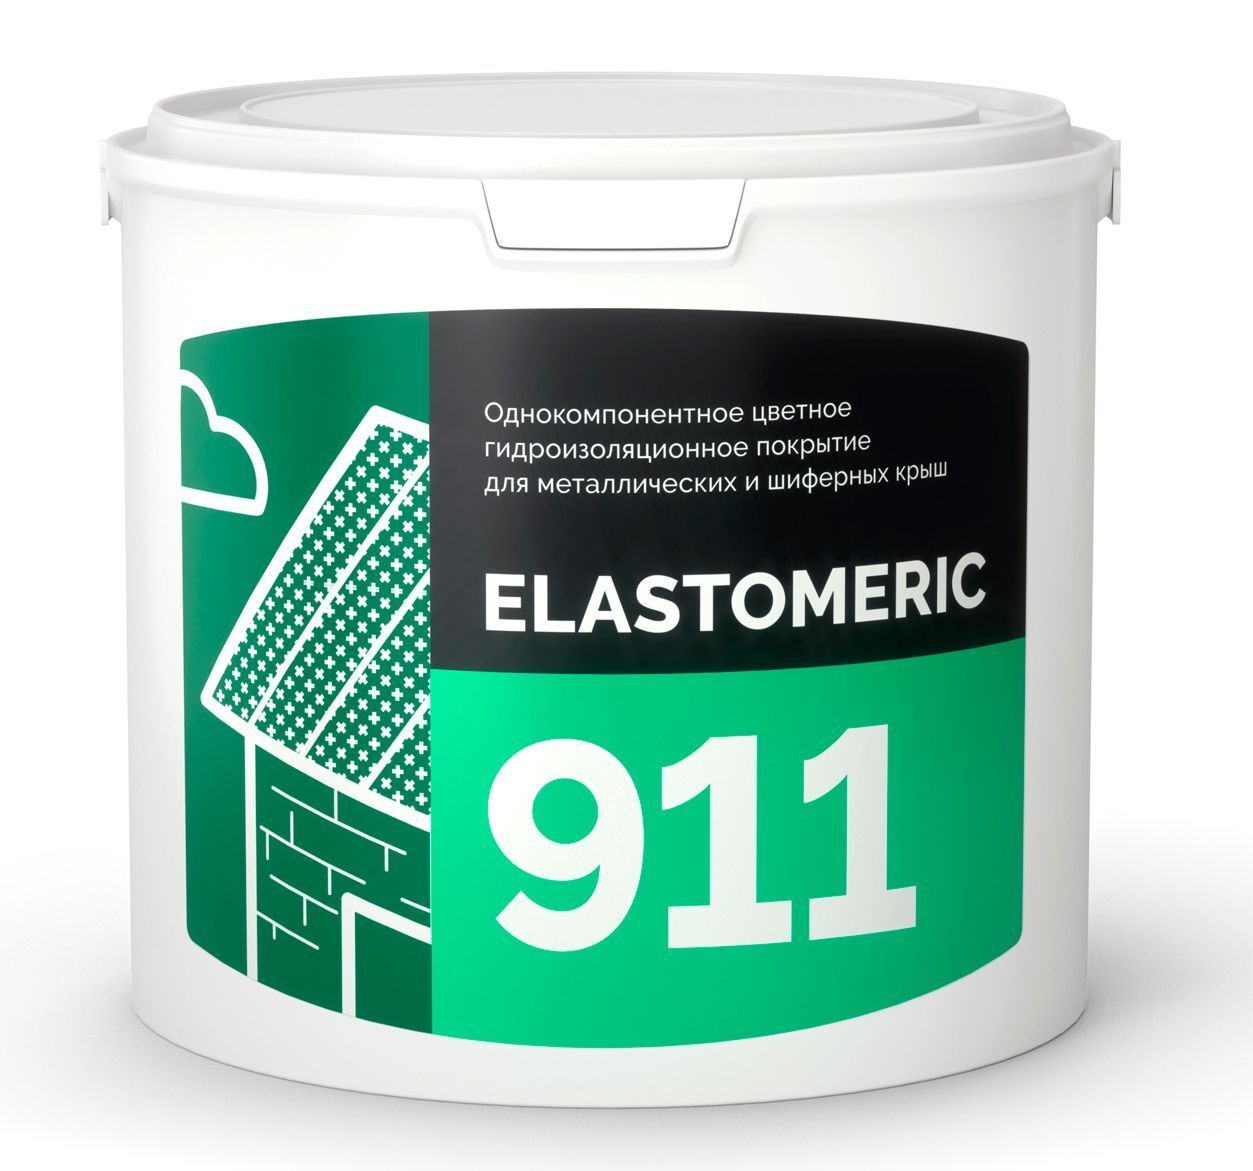 Гидроизоляция металлической и шиферной кровли - ELASTOMERIC 911 3 кг RAL 3005 винно-красный